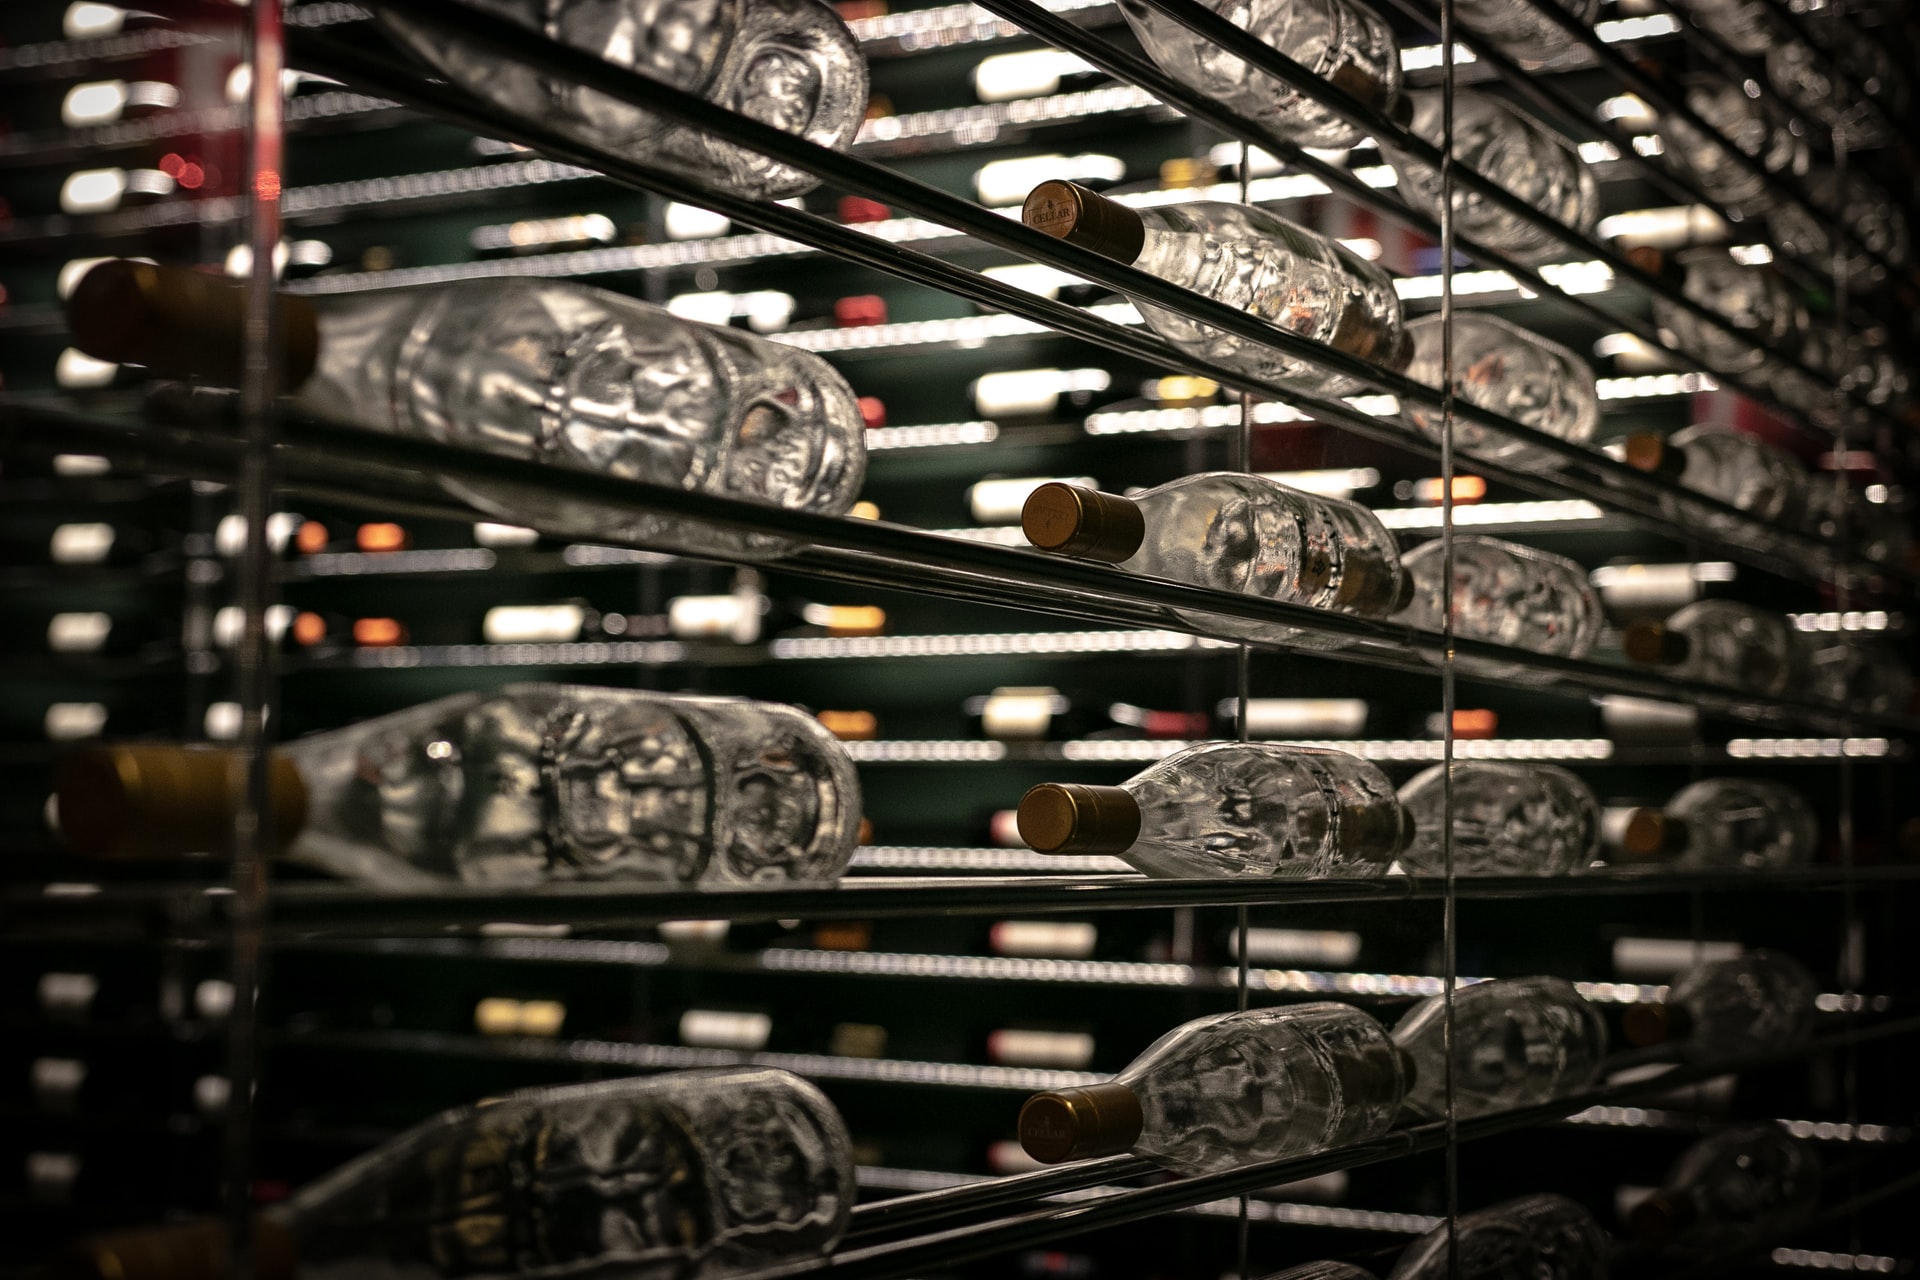 Rows of shelved wine bottles